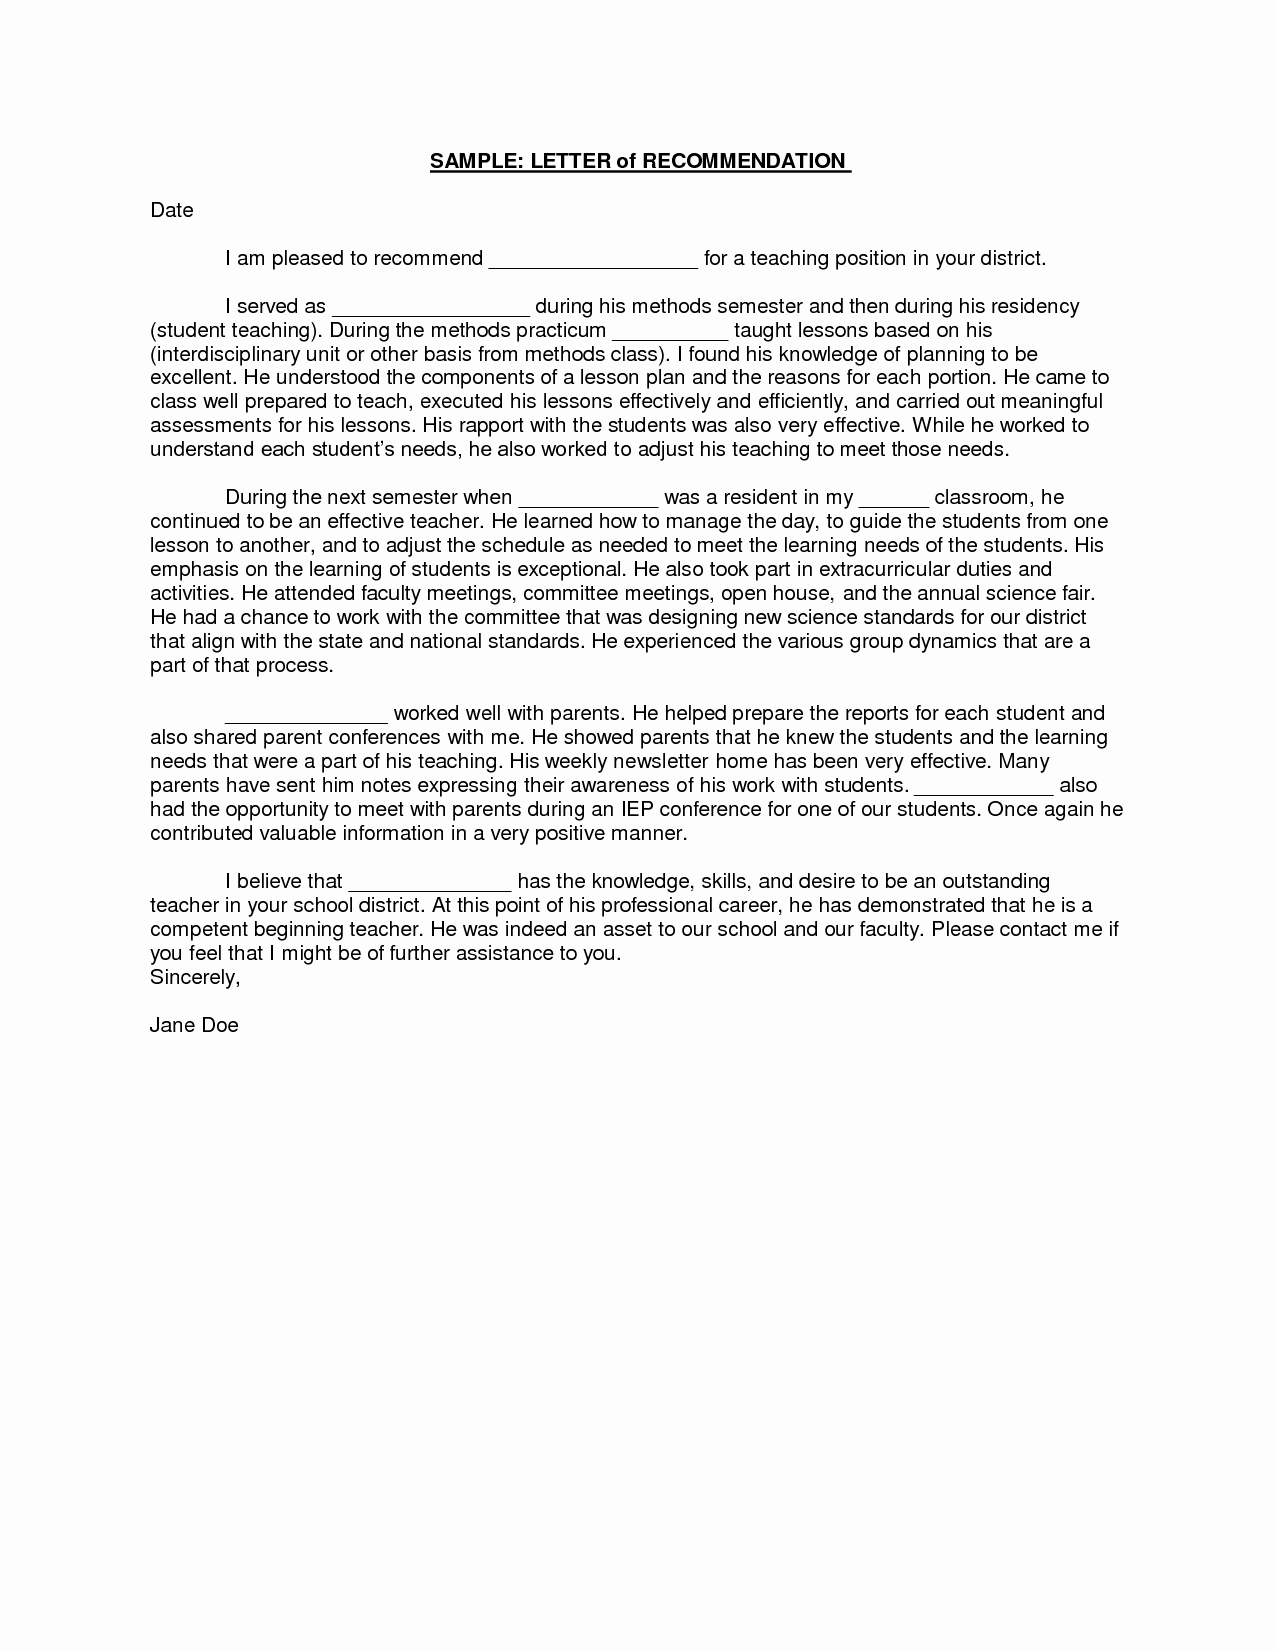 Recommendation Letter for Teacher Fresh Sample Student Teacher Re Mendation Letters V9nqmvof